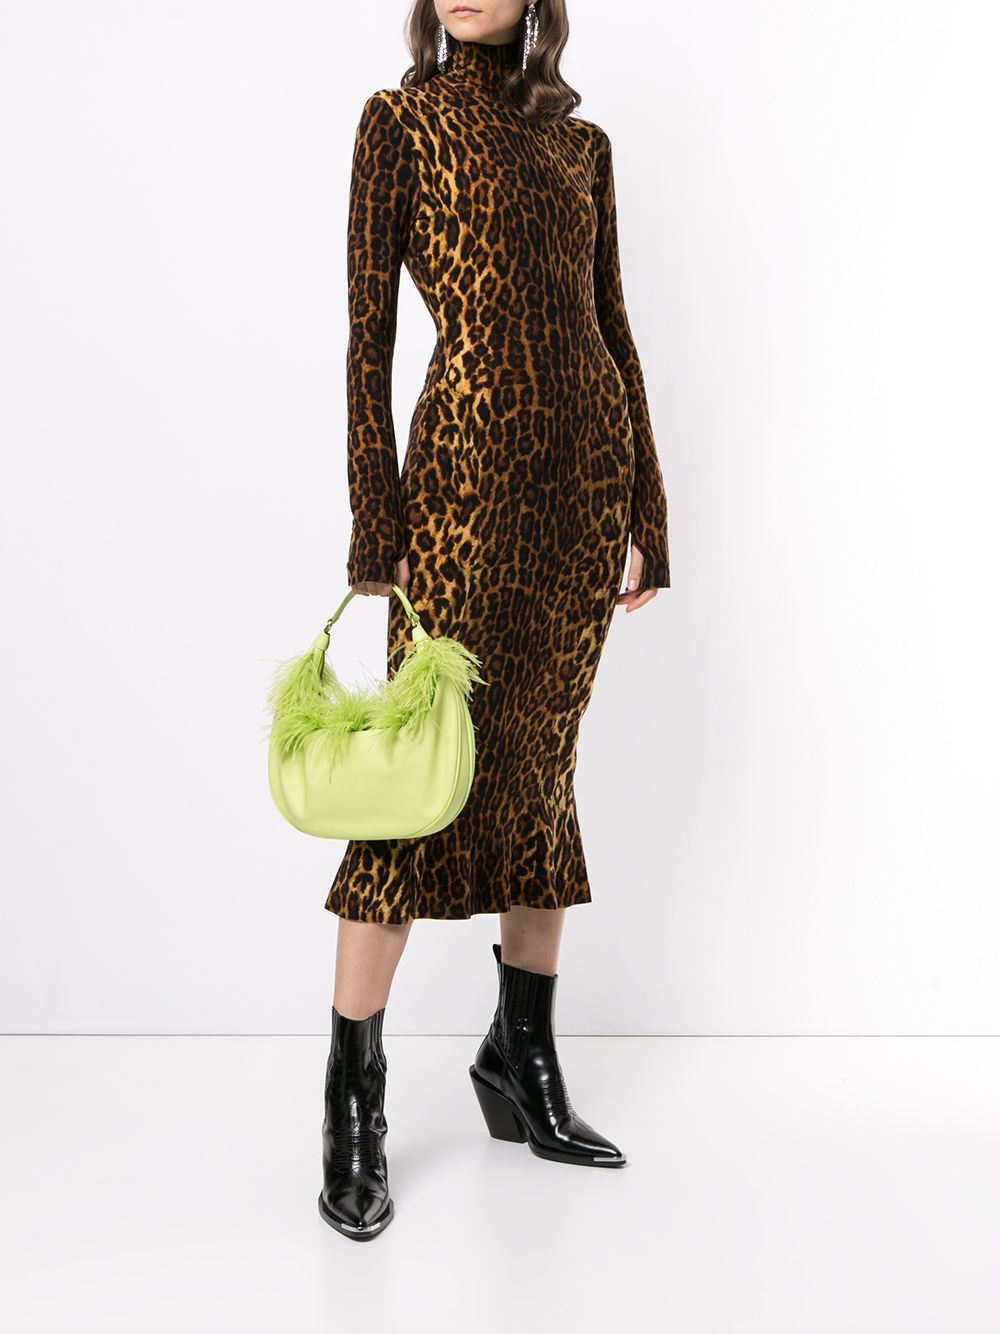 фото Norma kamali приталенное платье с леопардовым принтом